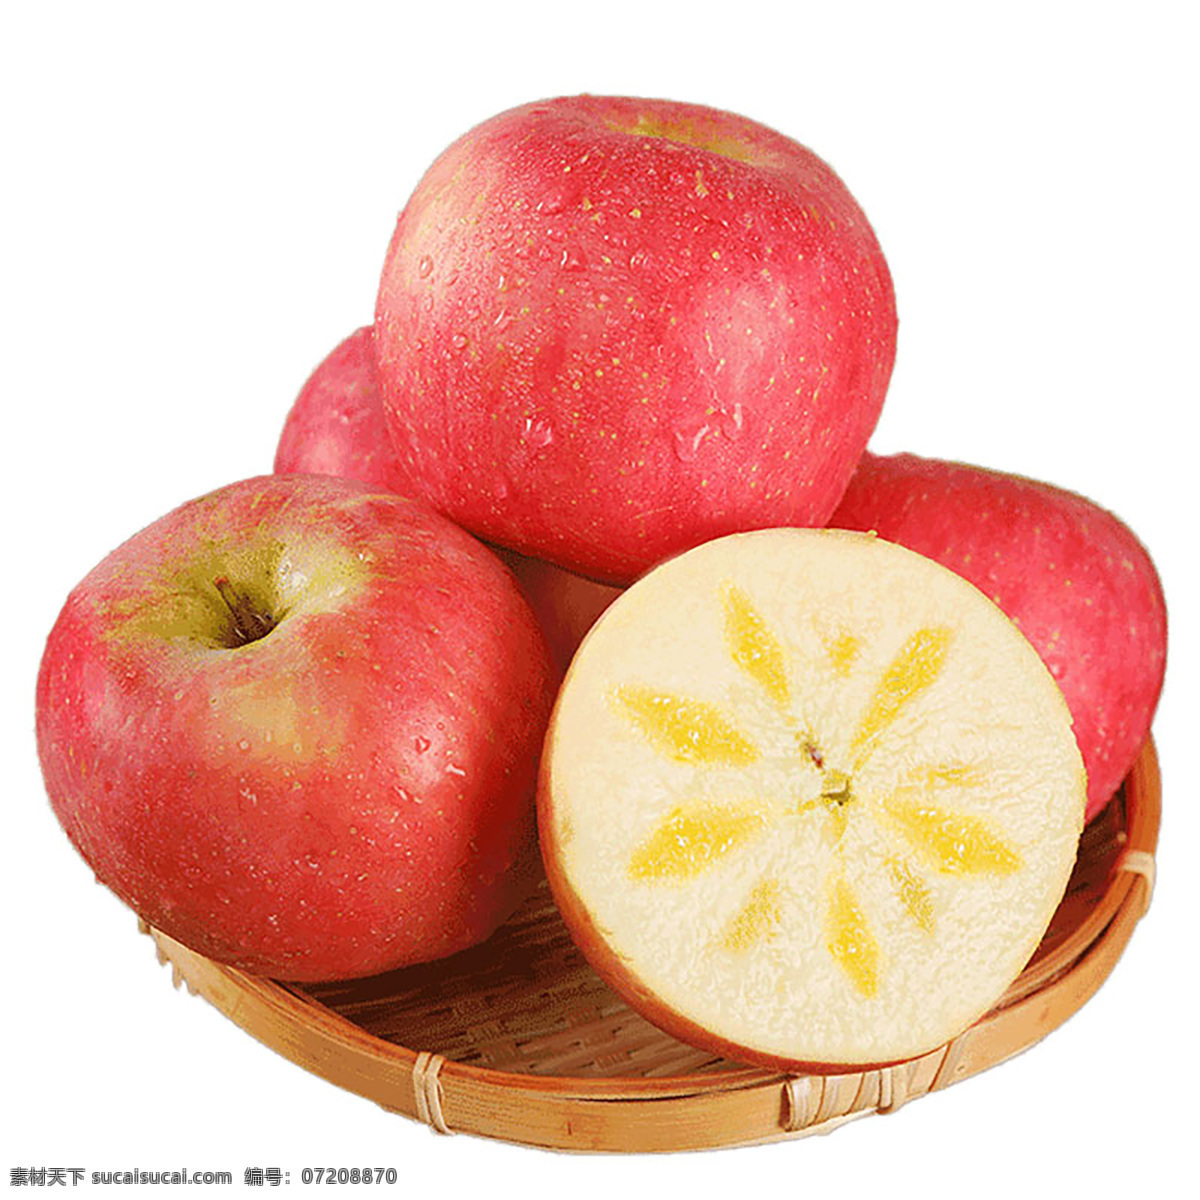 阿克苏 苹果 阿克苏苹果 商超 生鲜产品 水果 餐饮美食 食物原料